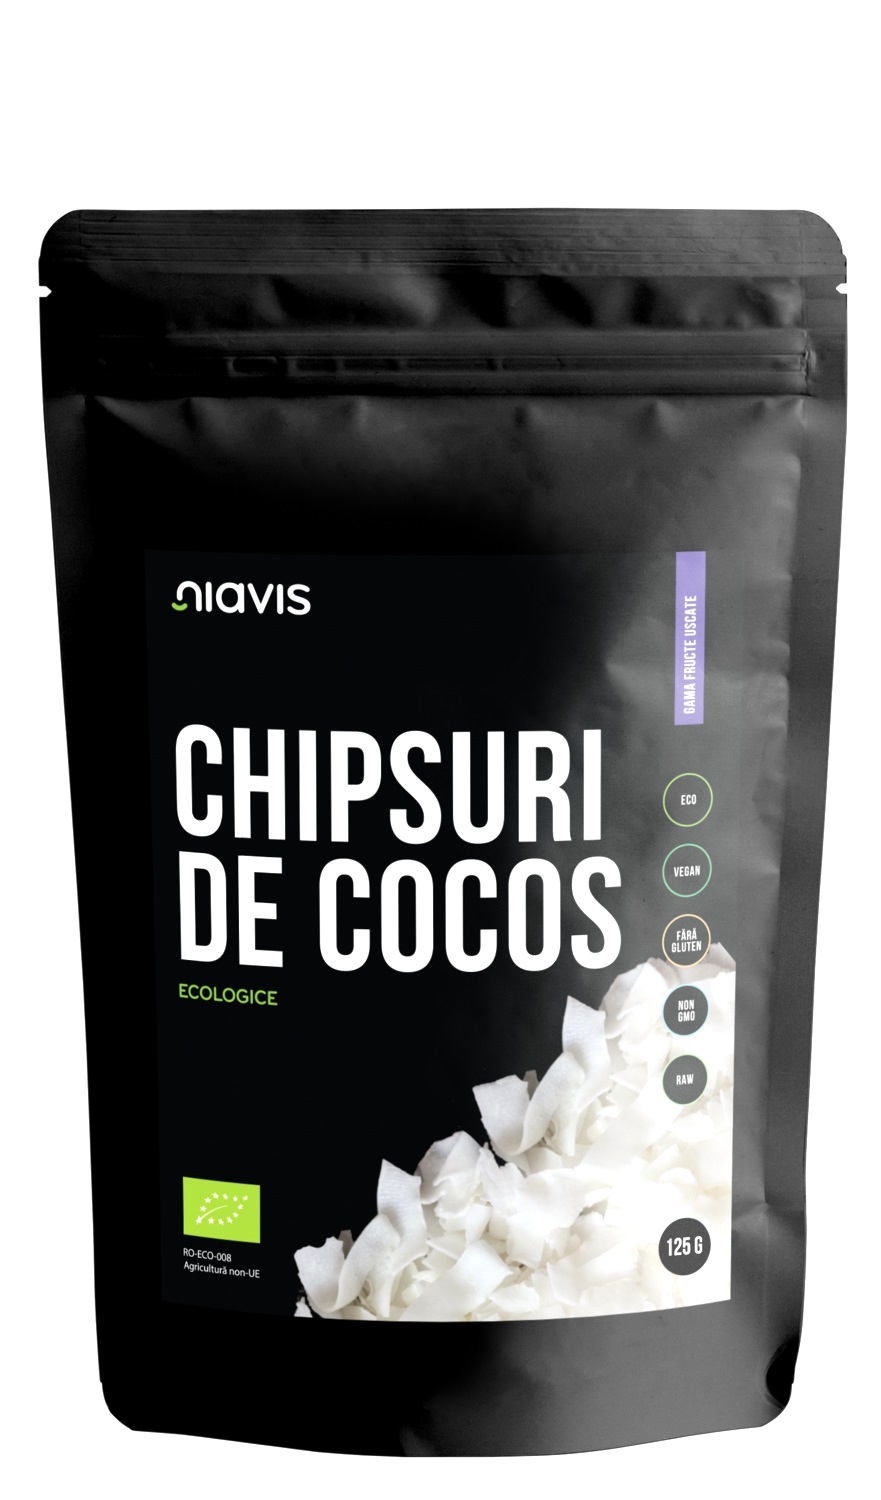 Chipsuri de cocos raw ECO/BIO 125g - Niavis